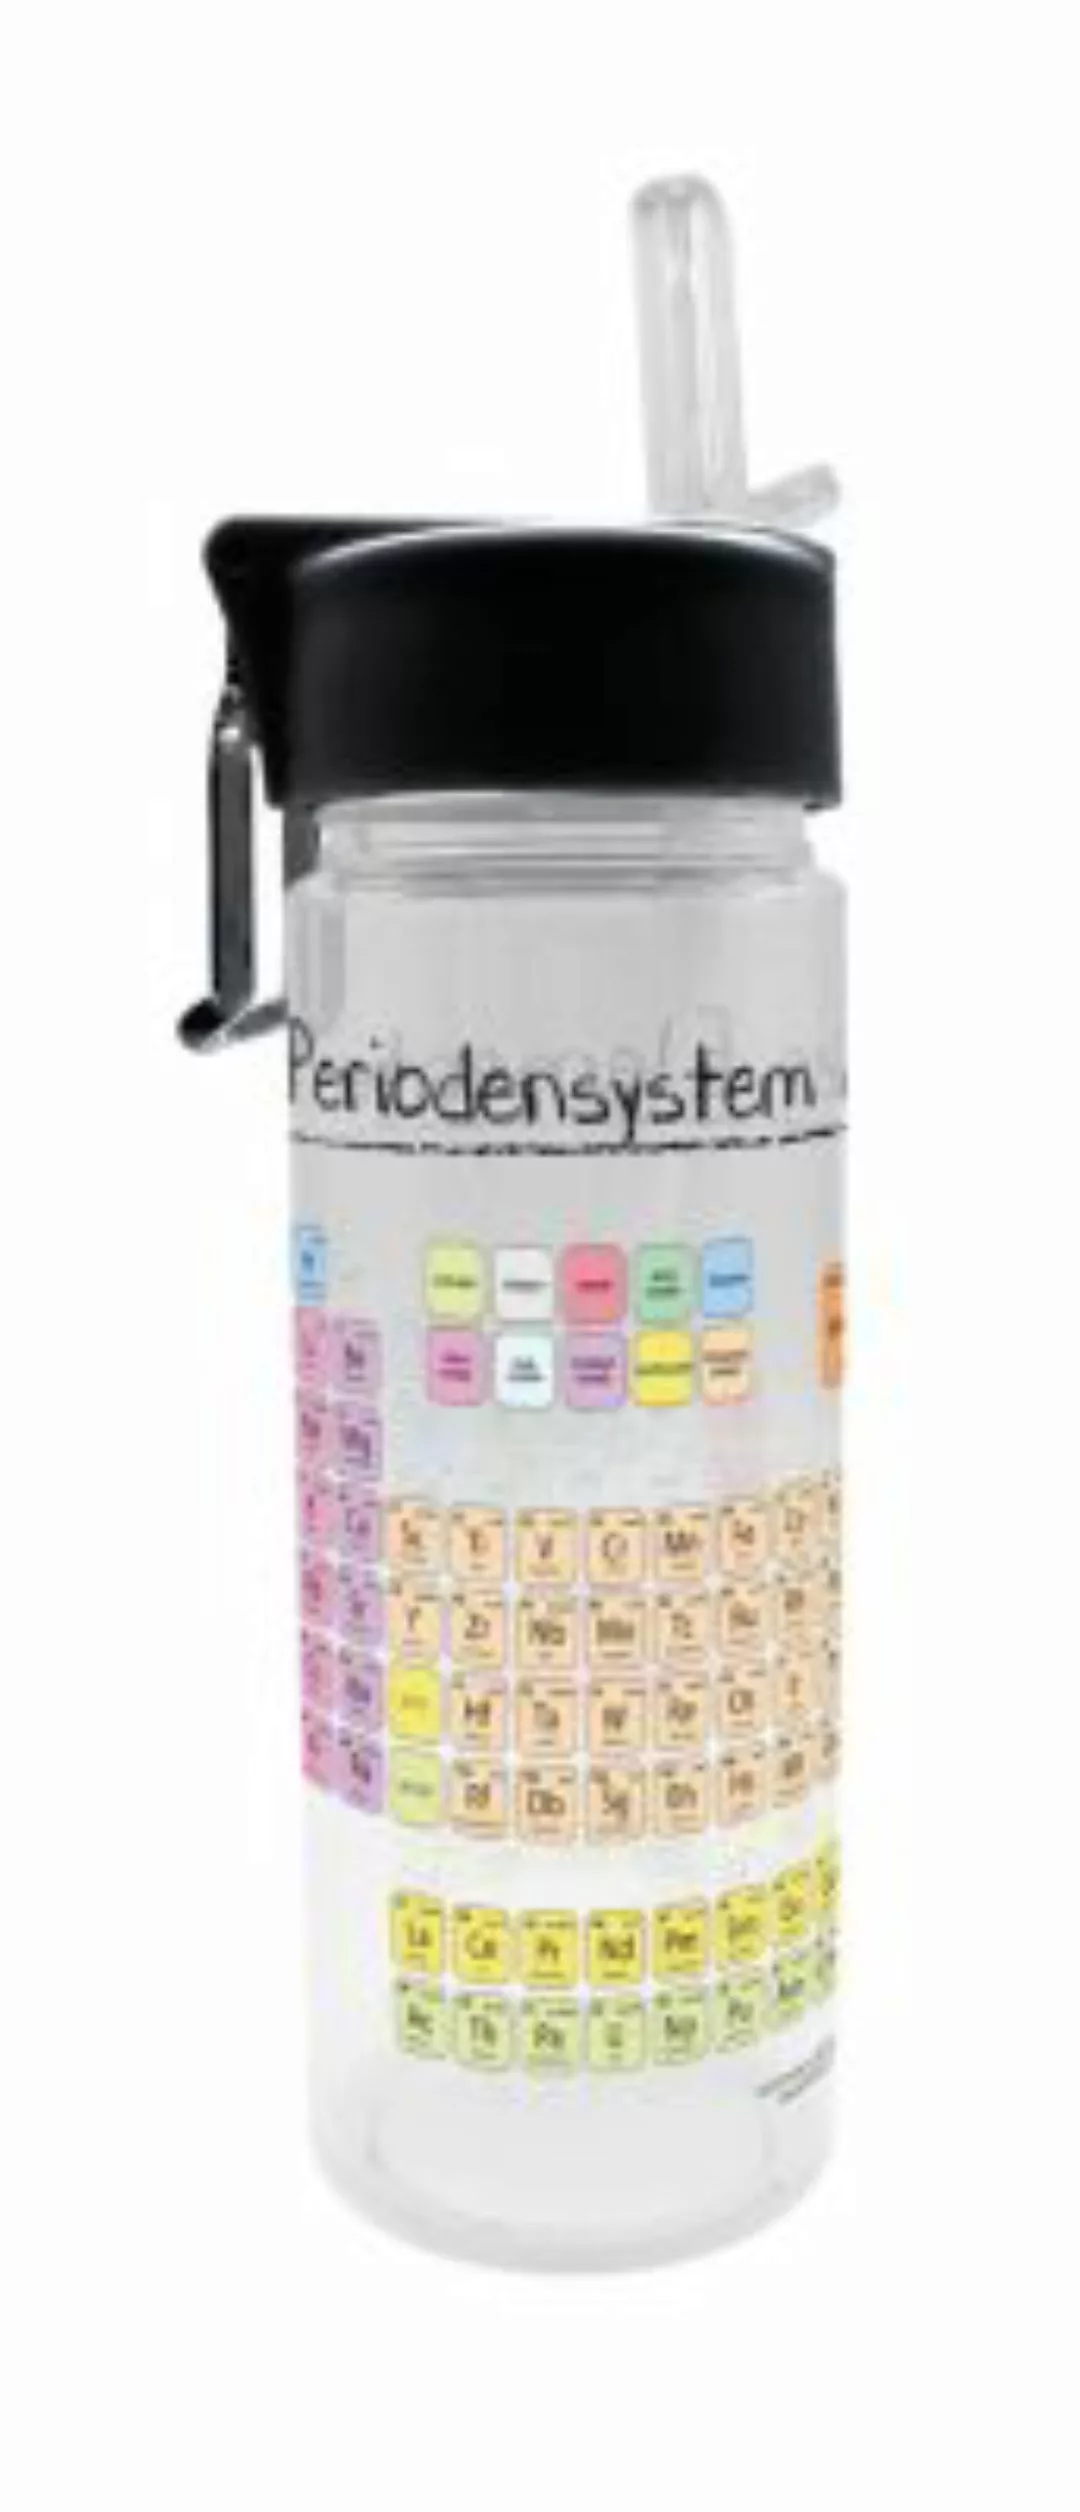 Geda Labels Trinkflasche Periodensystem 500ml Trinkflaschen bunt günstig online kaufen